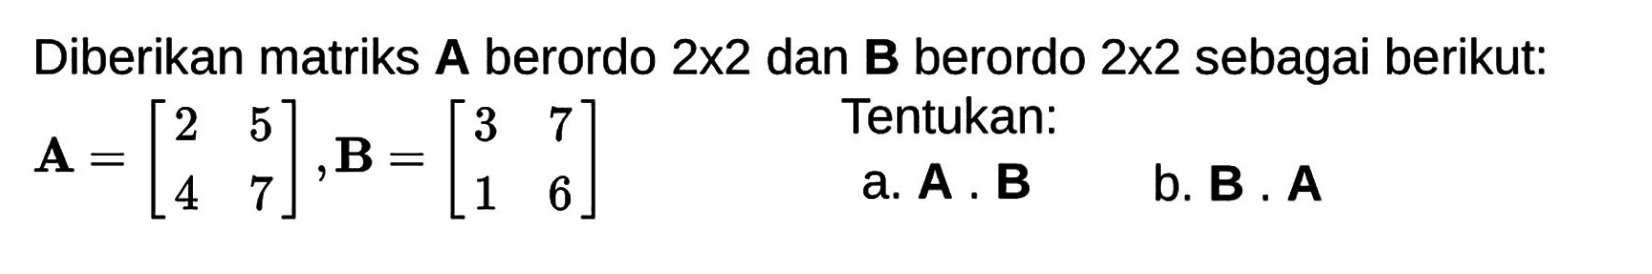 Diberikan matriks A berordo 2x2 dan B berordo 2x2 sebagai berikut:  A=[2 5 4 7], B=[3 7 1 6] Tentukan: a. A. B b. B.A